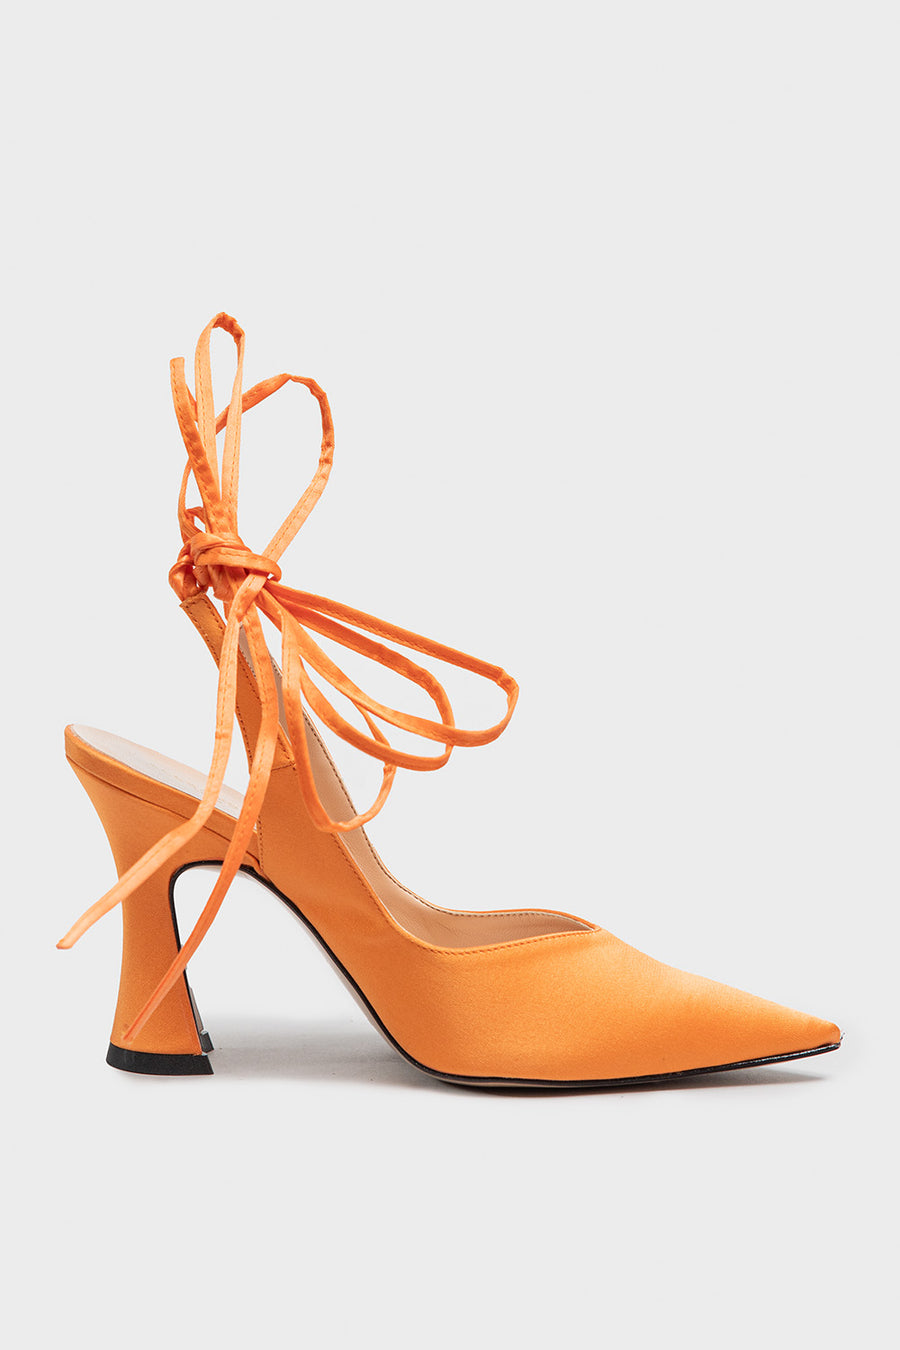 Sandalo Chanel da donna in tessuto arancione D988